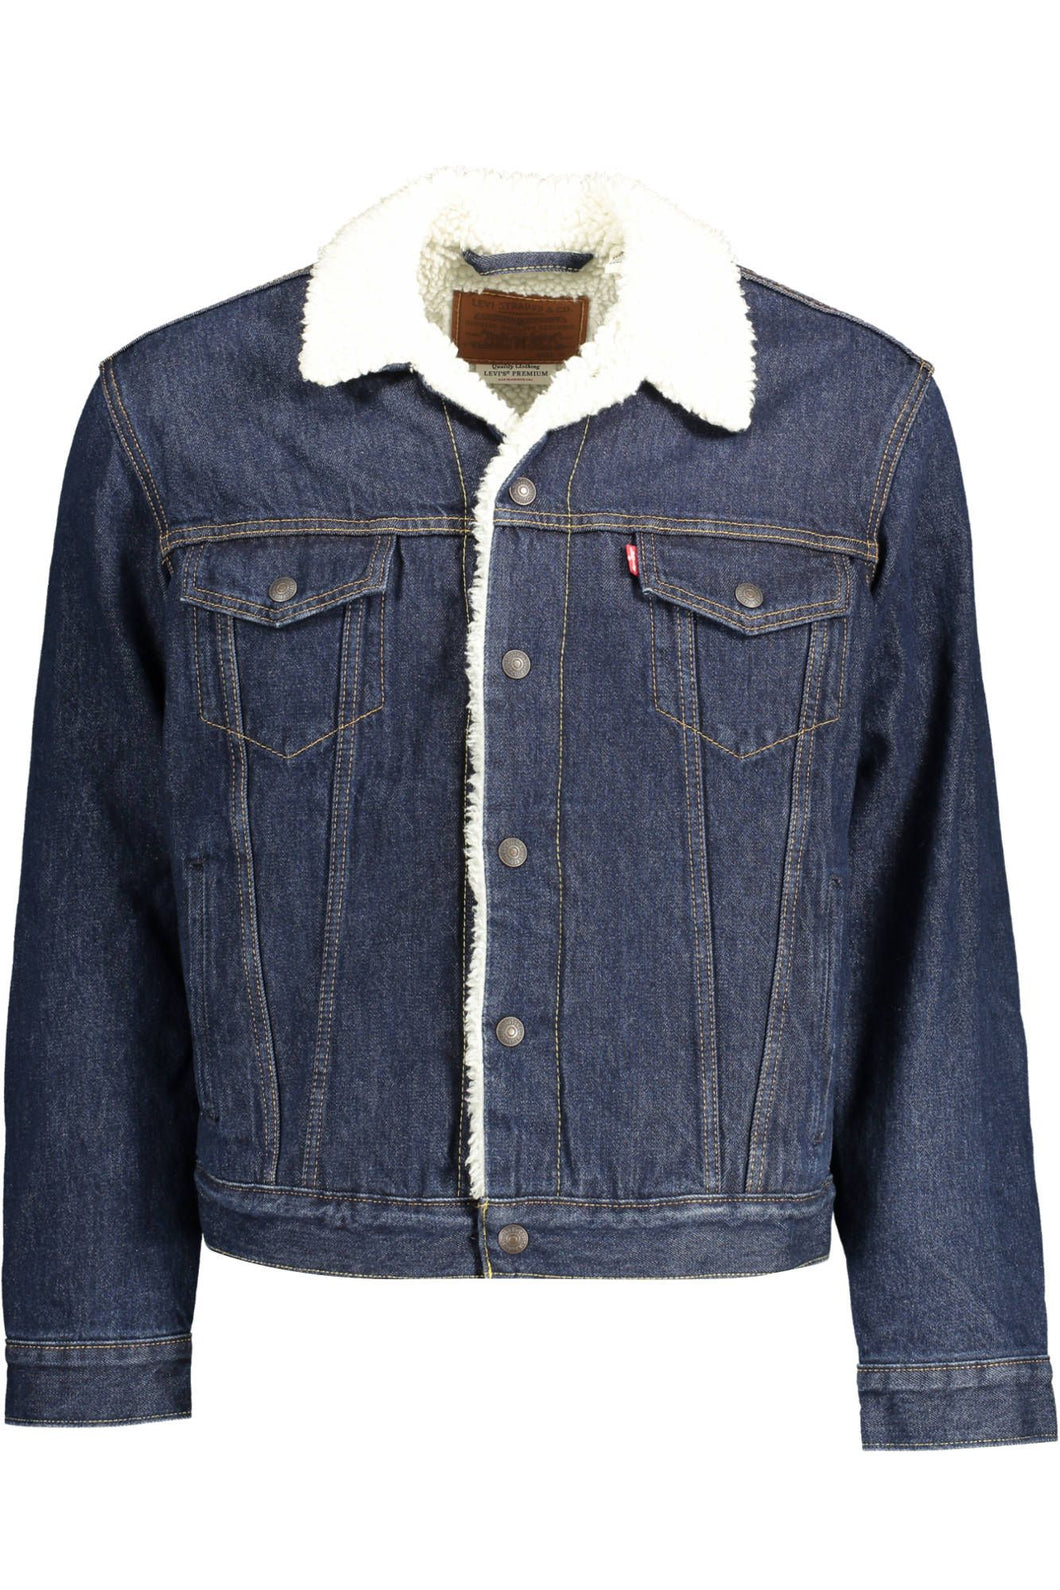 Levi's Blue Cotton Jacket